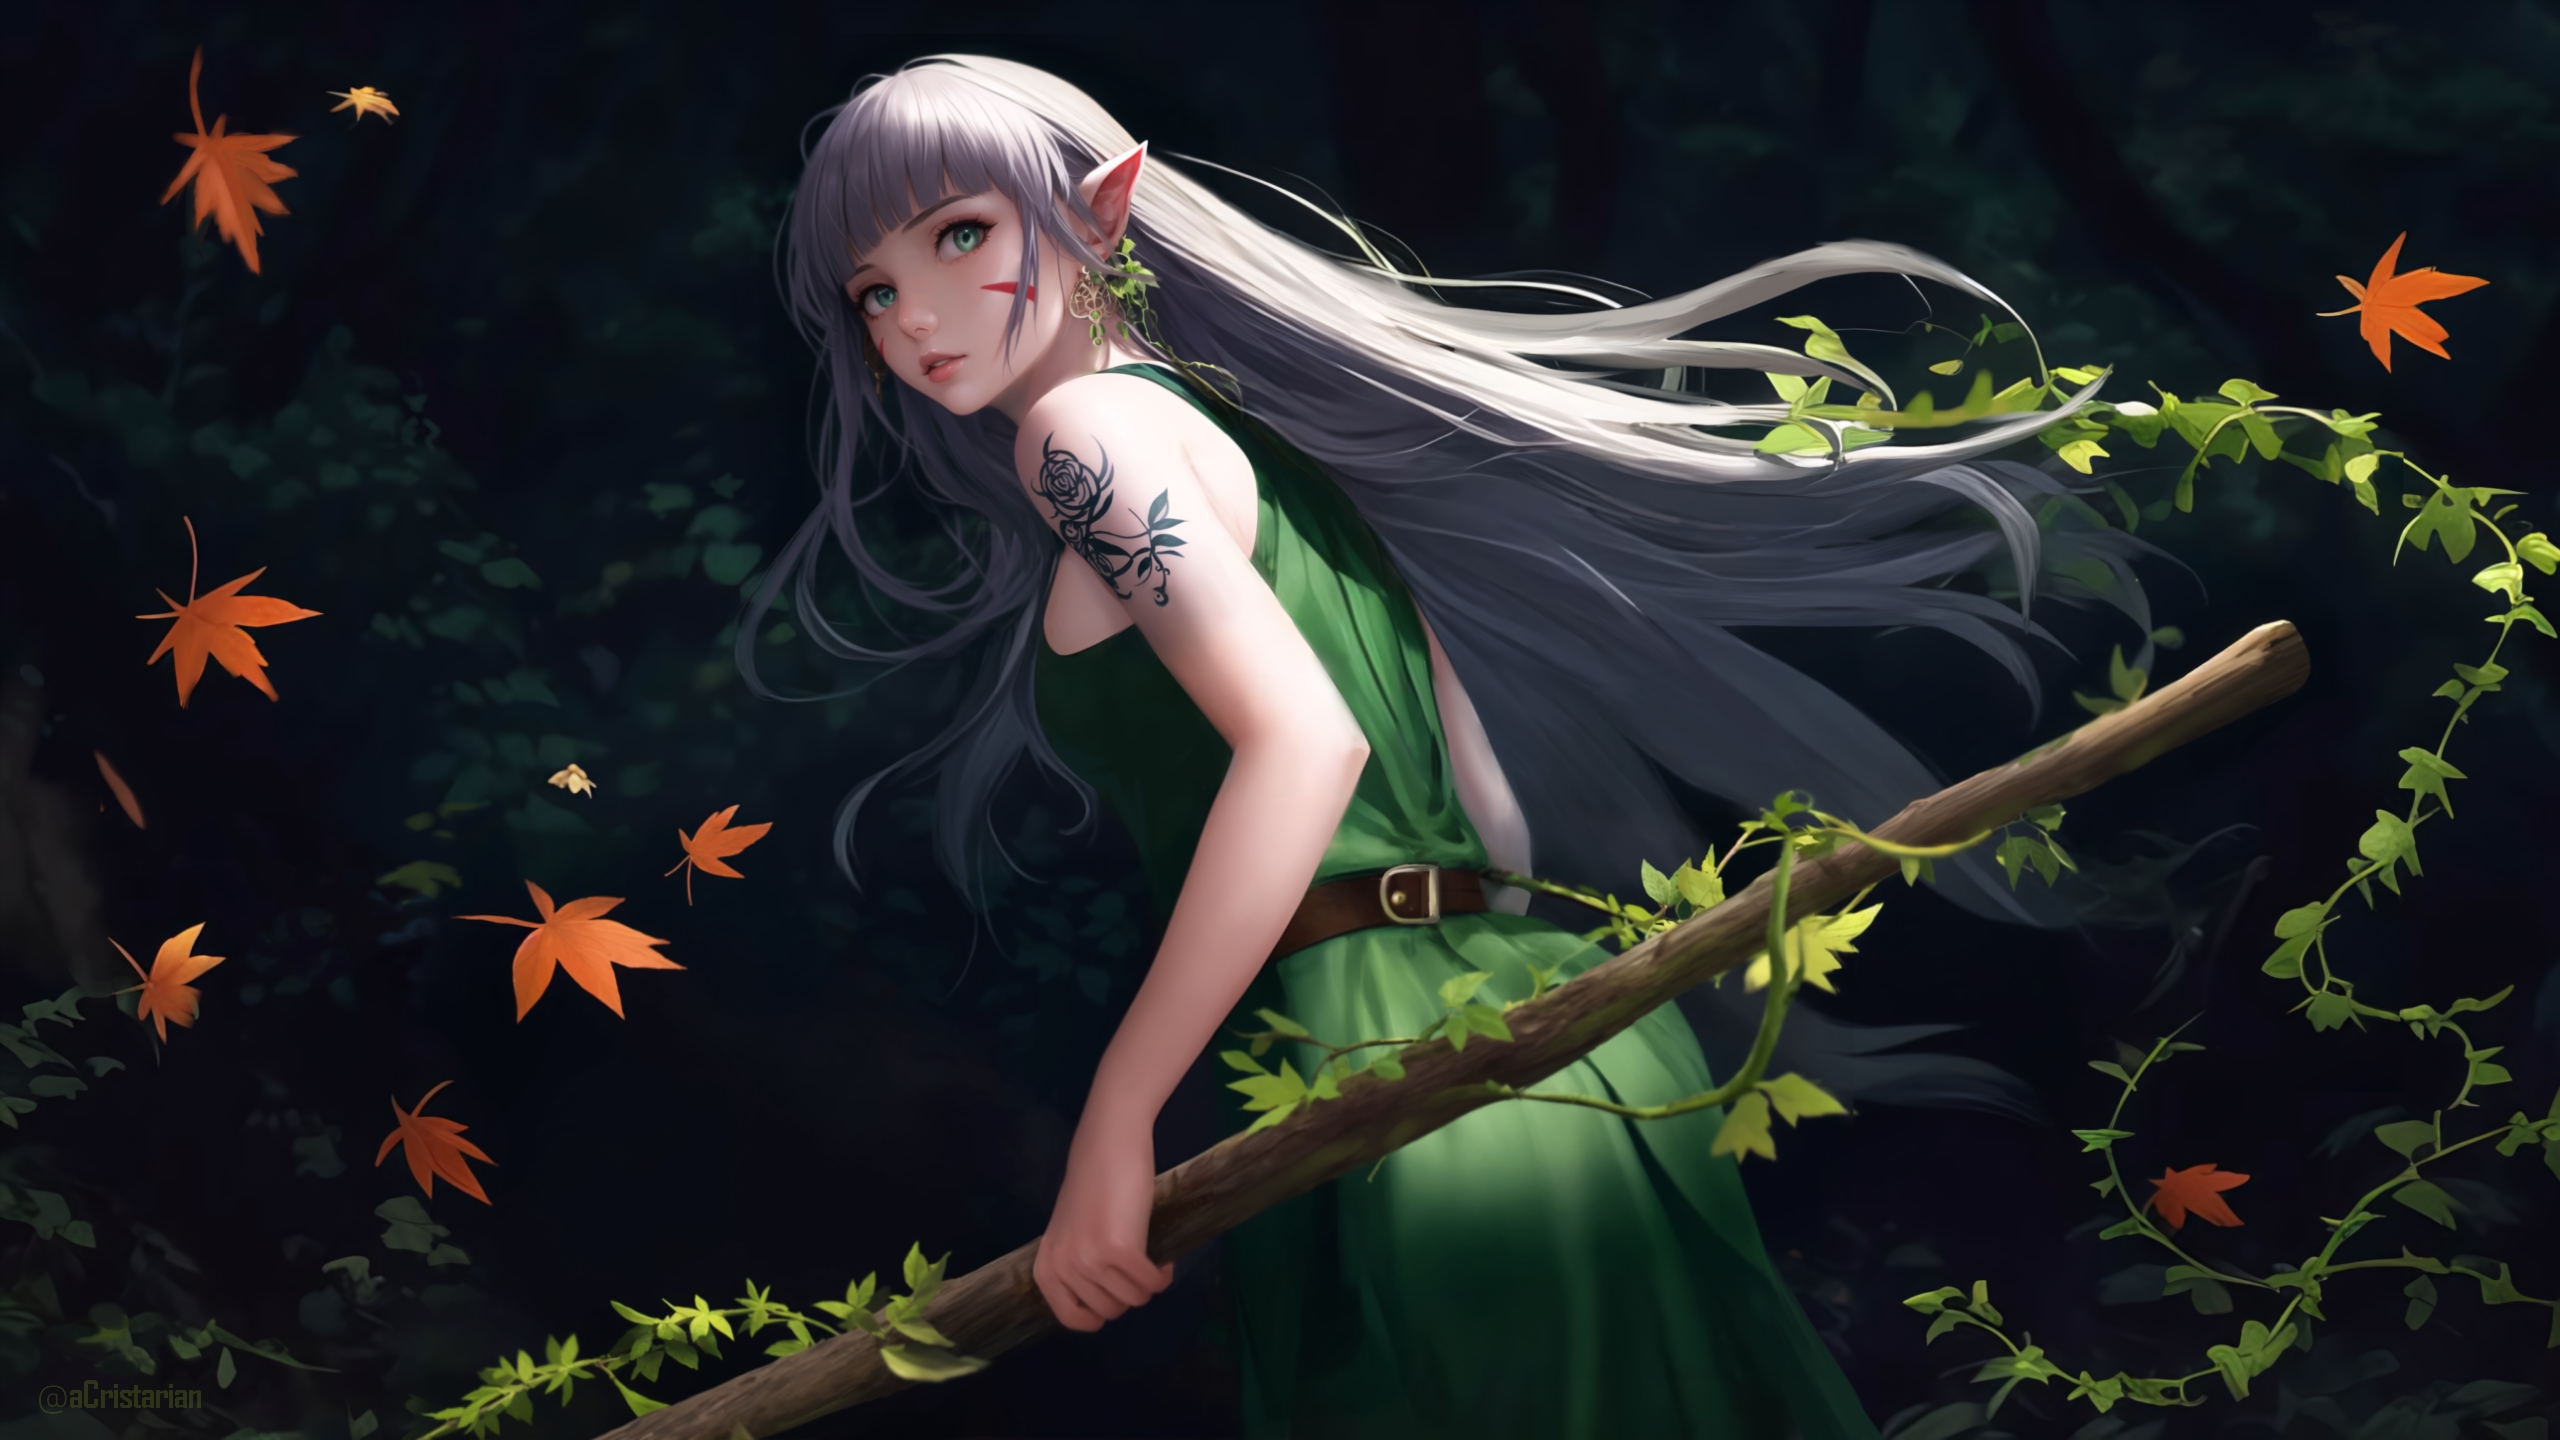 Anime 2560x1440 forest elven green dress leaves pointy ears fantasy girl fantasy art tattoo anime girls